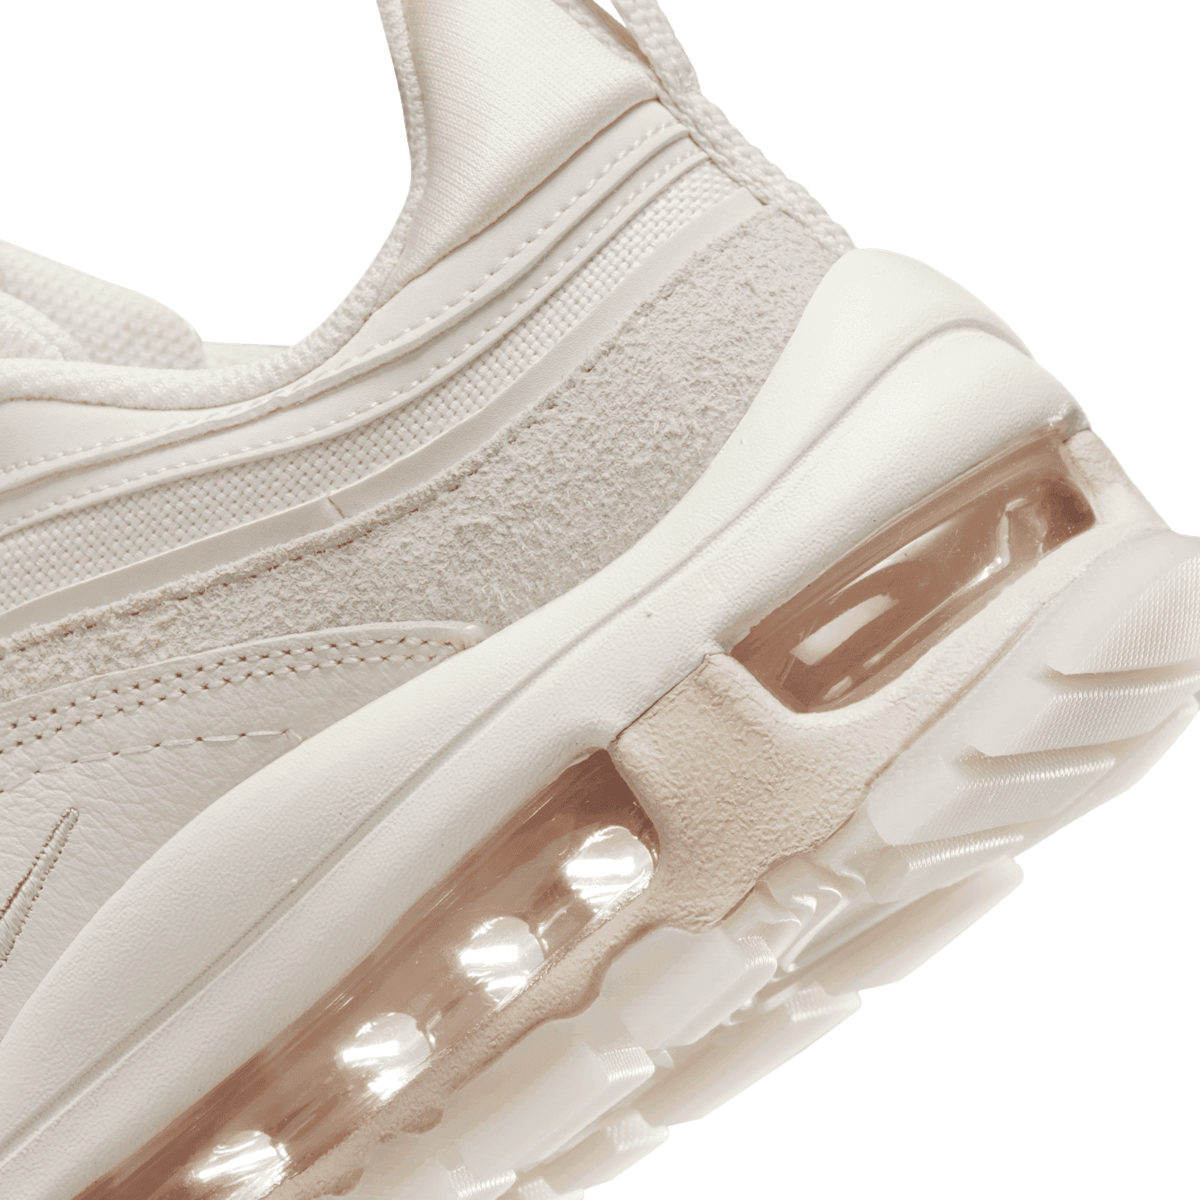 Nike Air Max 97 Futura Cream Angle 6